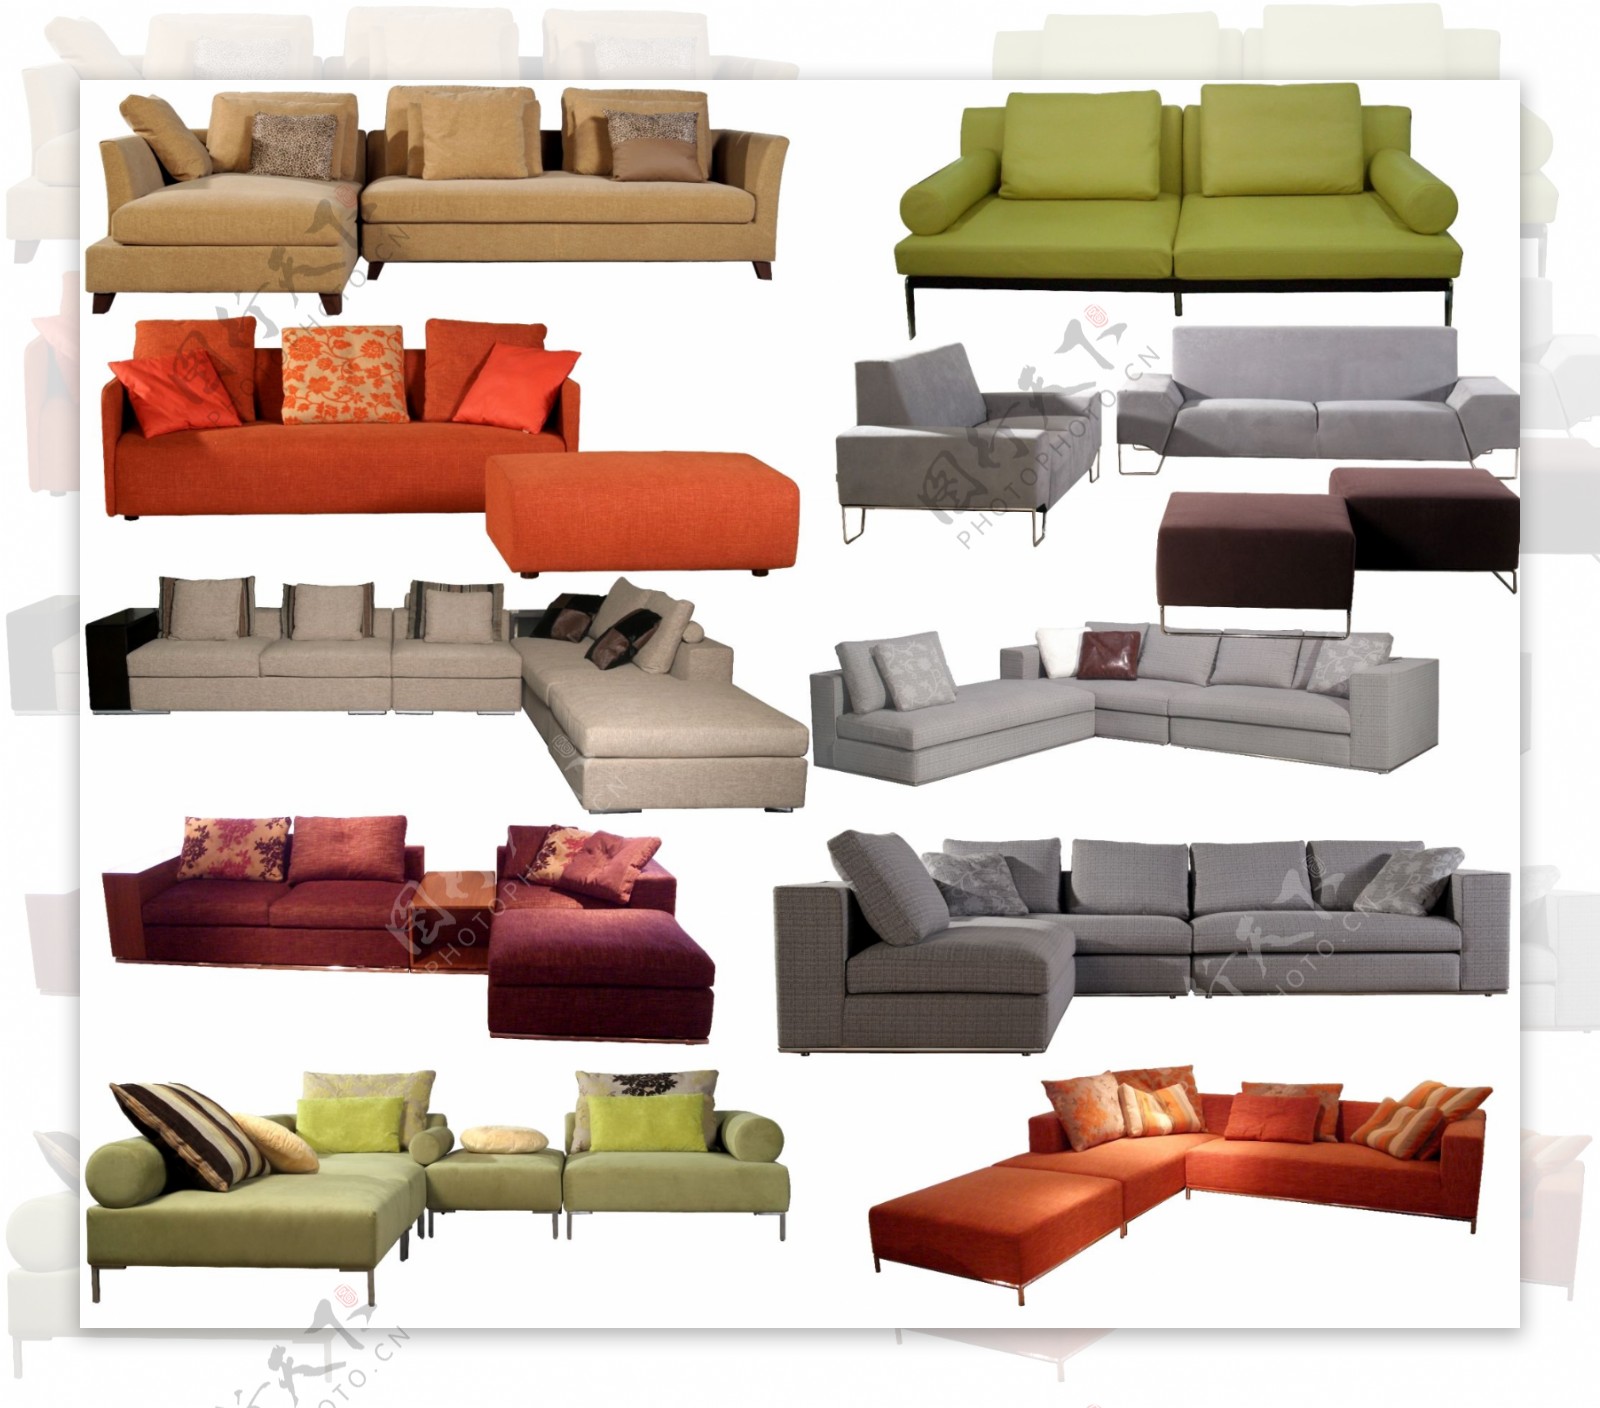 各种款式和颜色的沙发